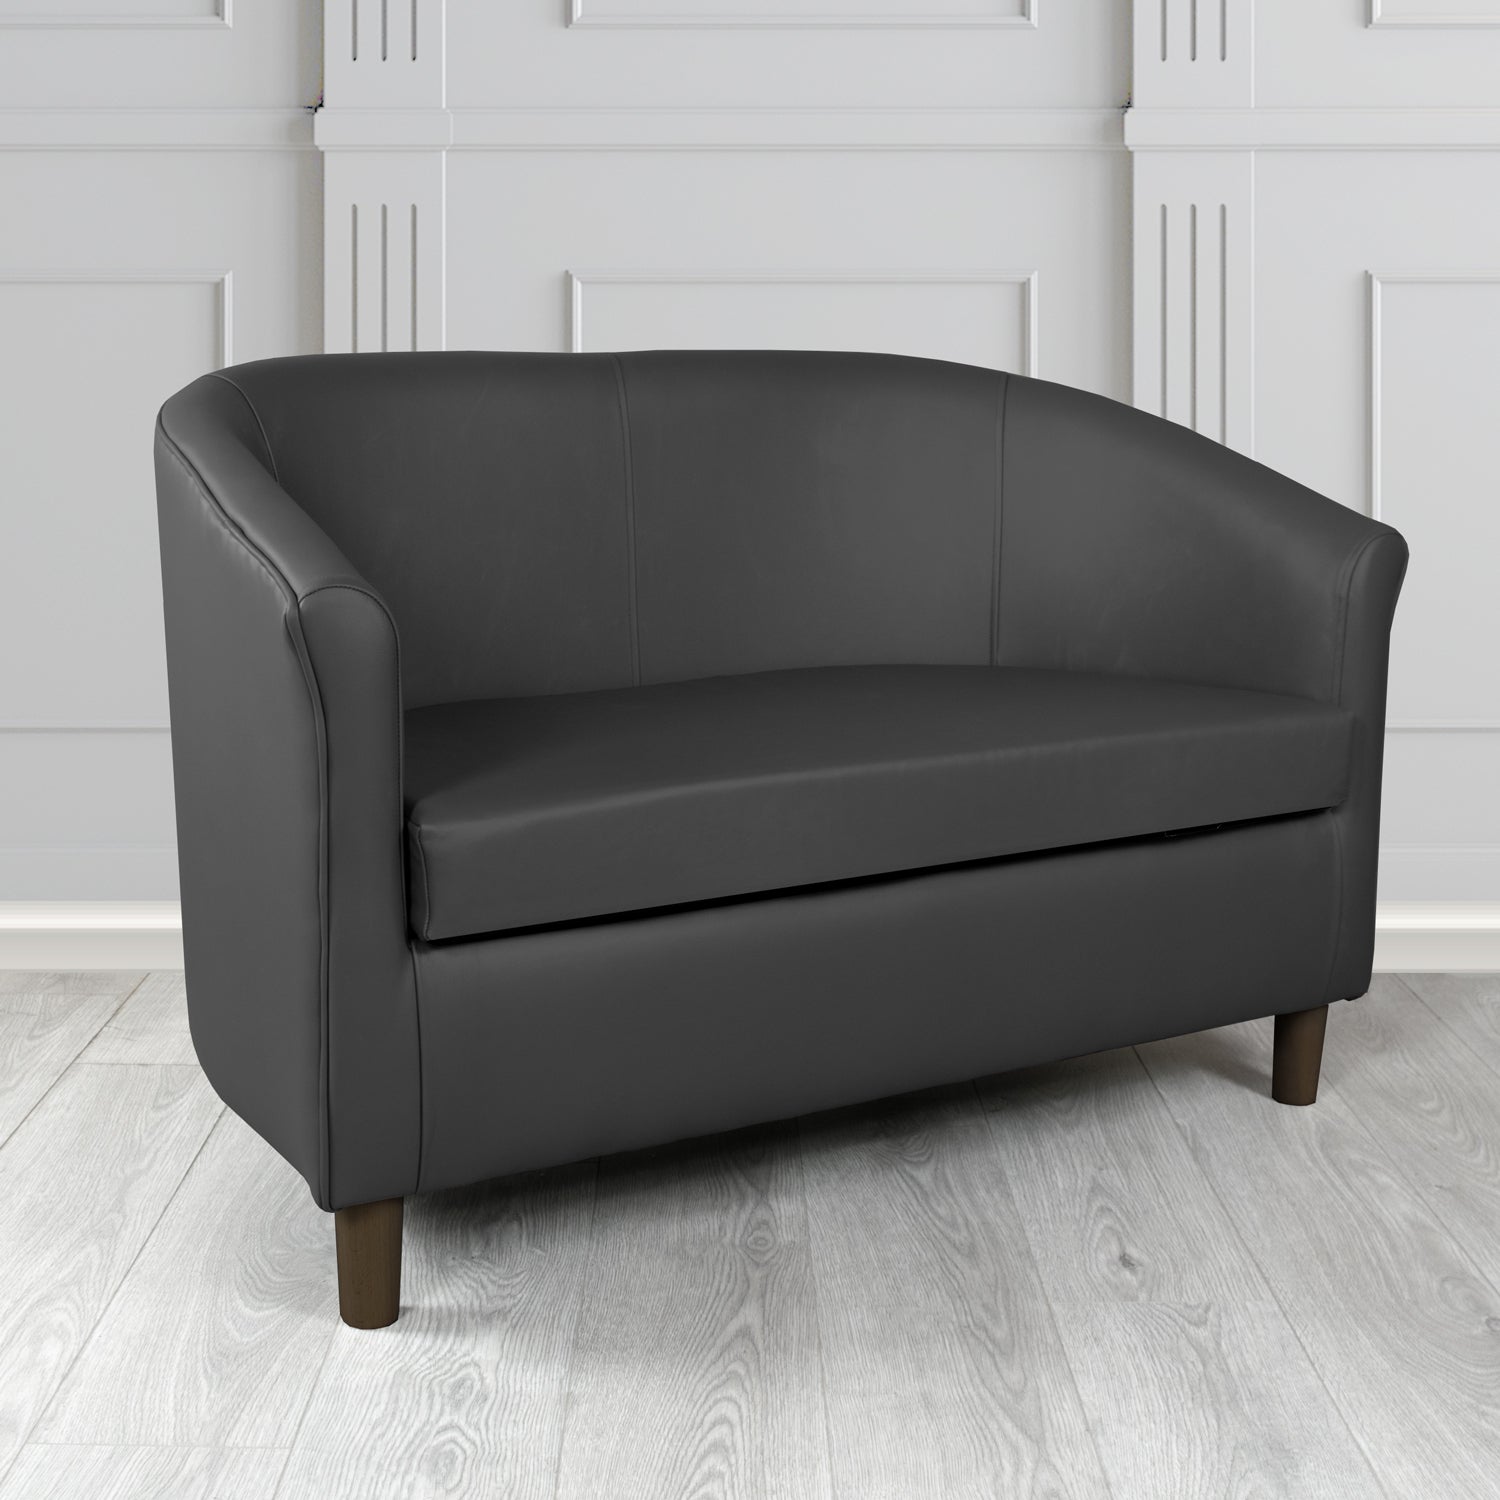 Tuscany 2 Seater Tub Sofa in Contempo Black Crib 5 Genuine Leather